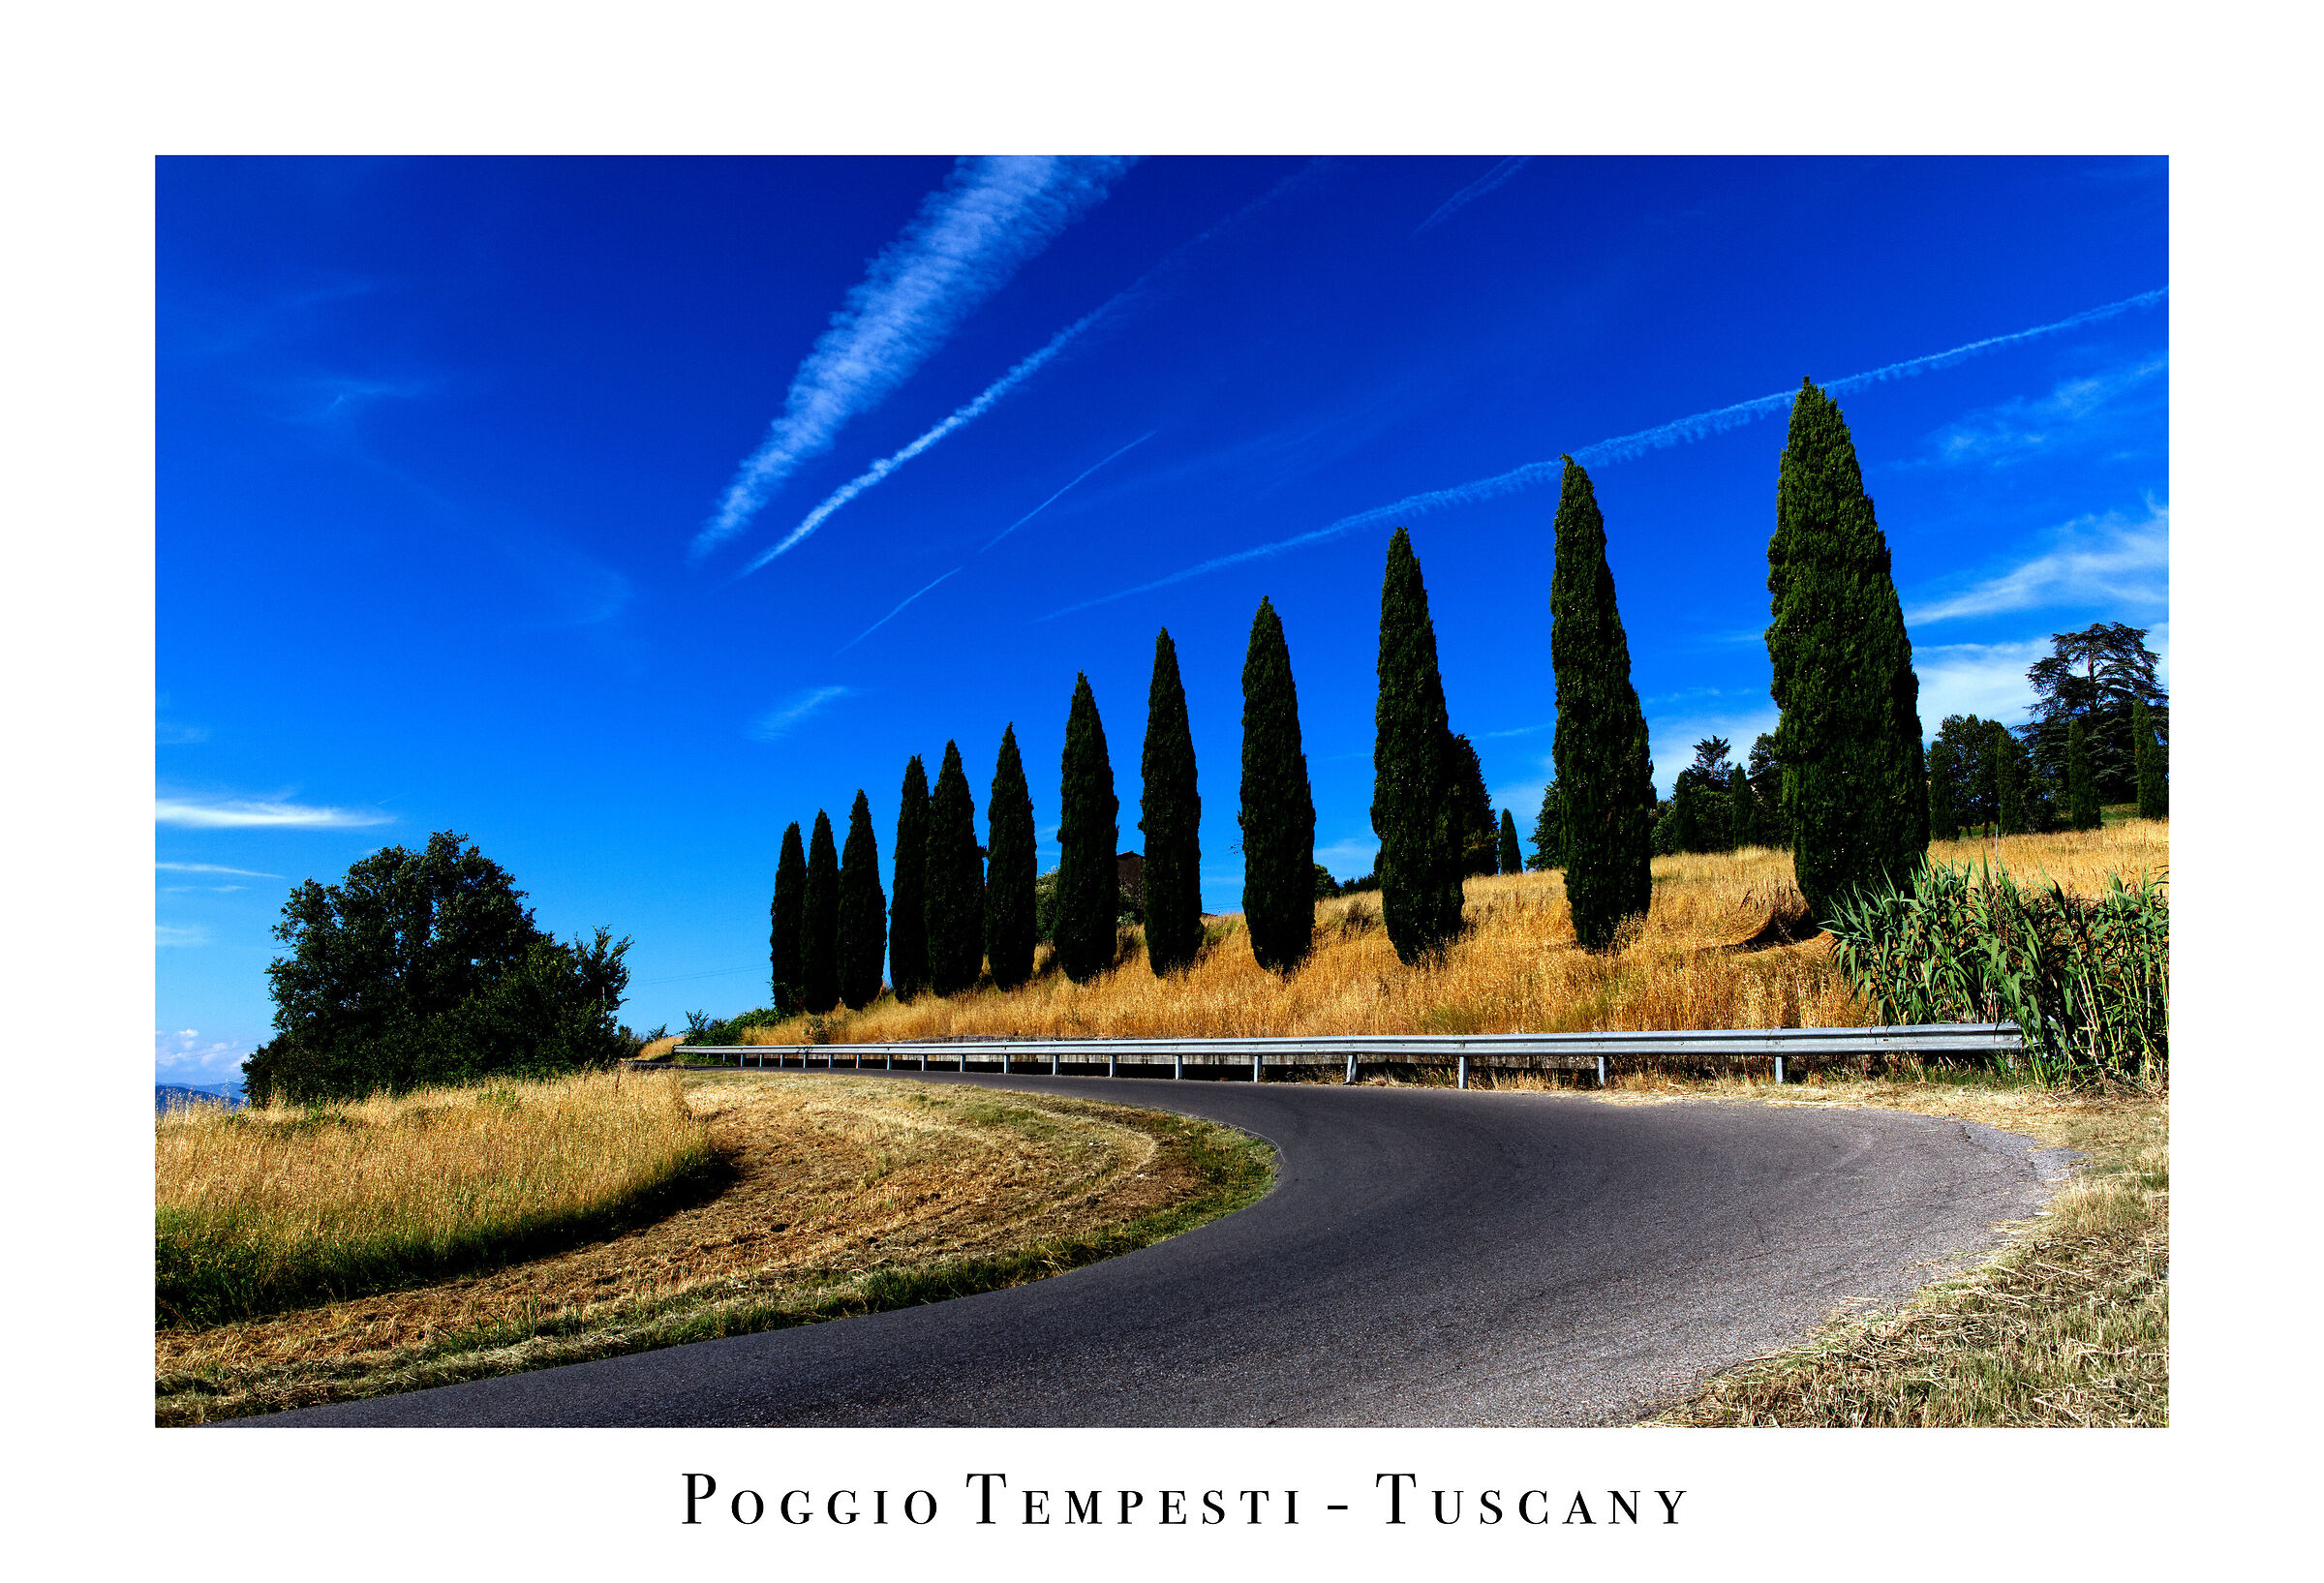 Poggio Tempesti - Tuscany...